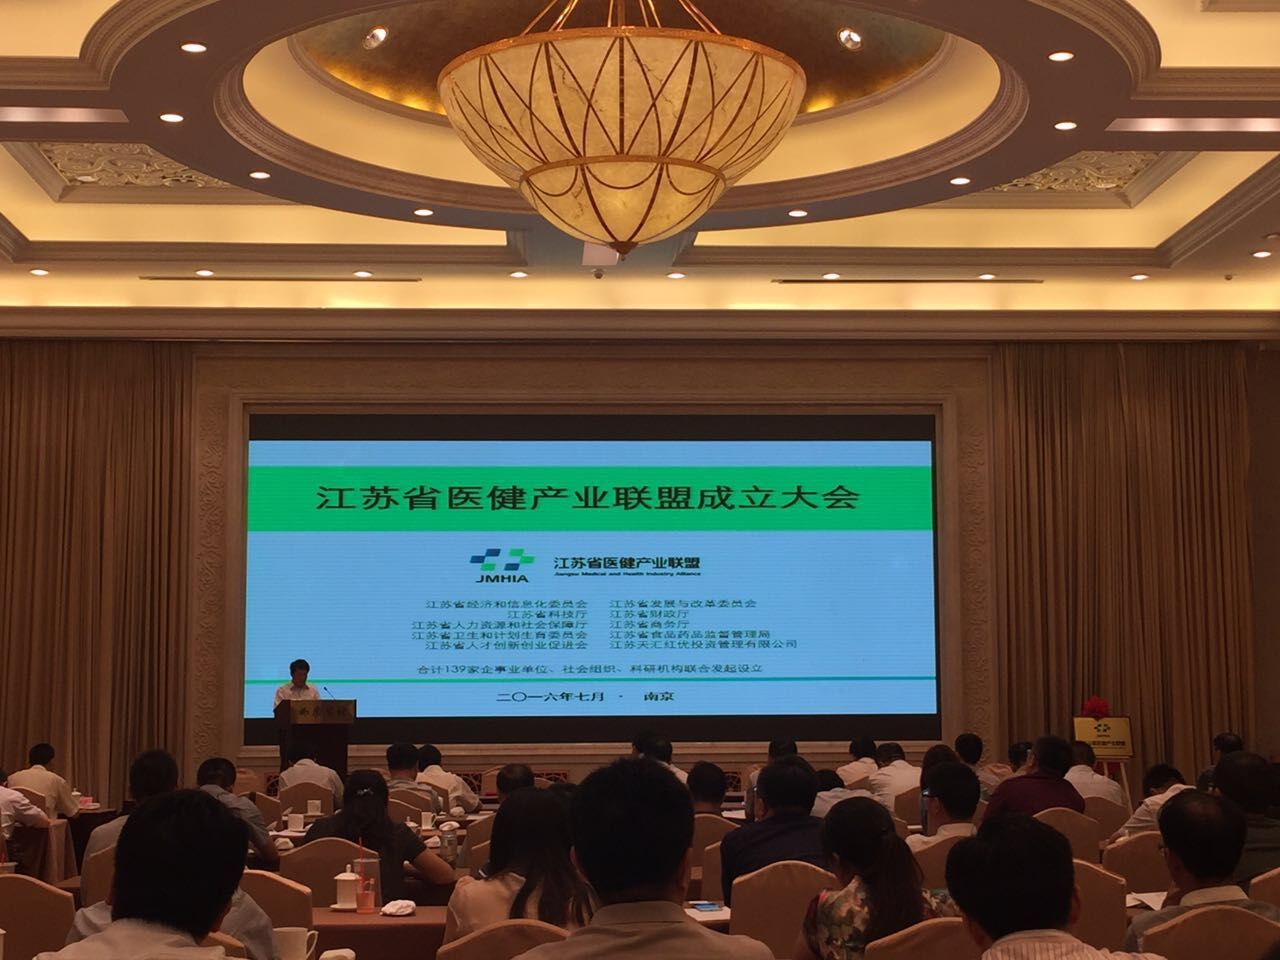 医疗保险--【头条】:139家单位共商大计 江苏省医健产业联盟正式成立